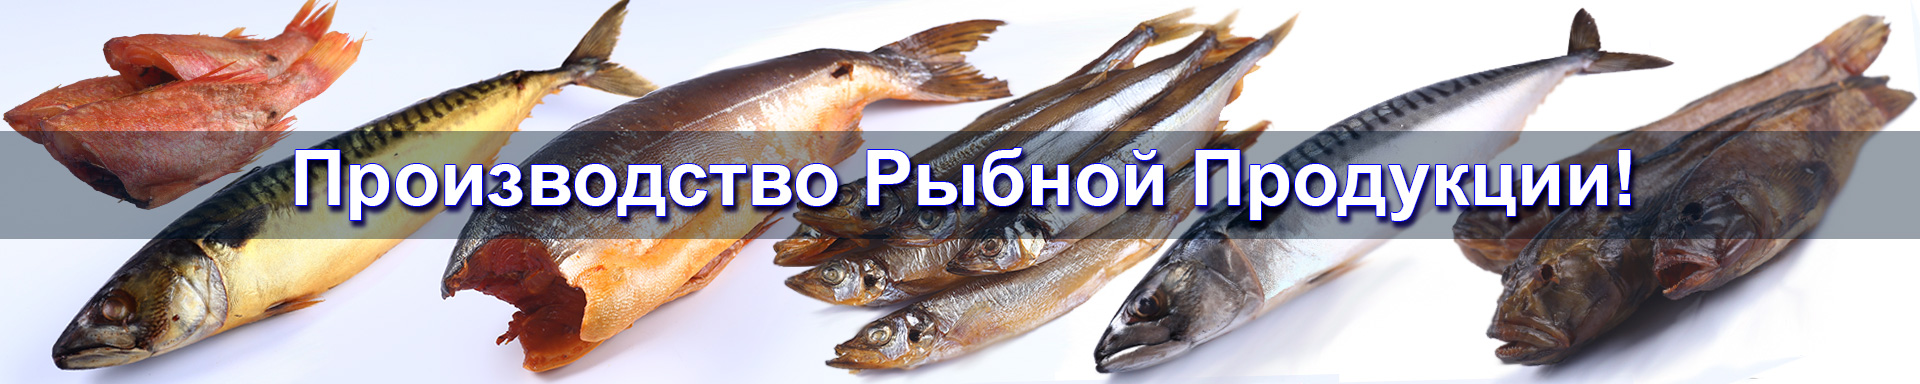 Производство рыбной продукции!